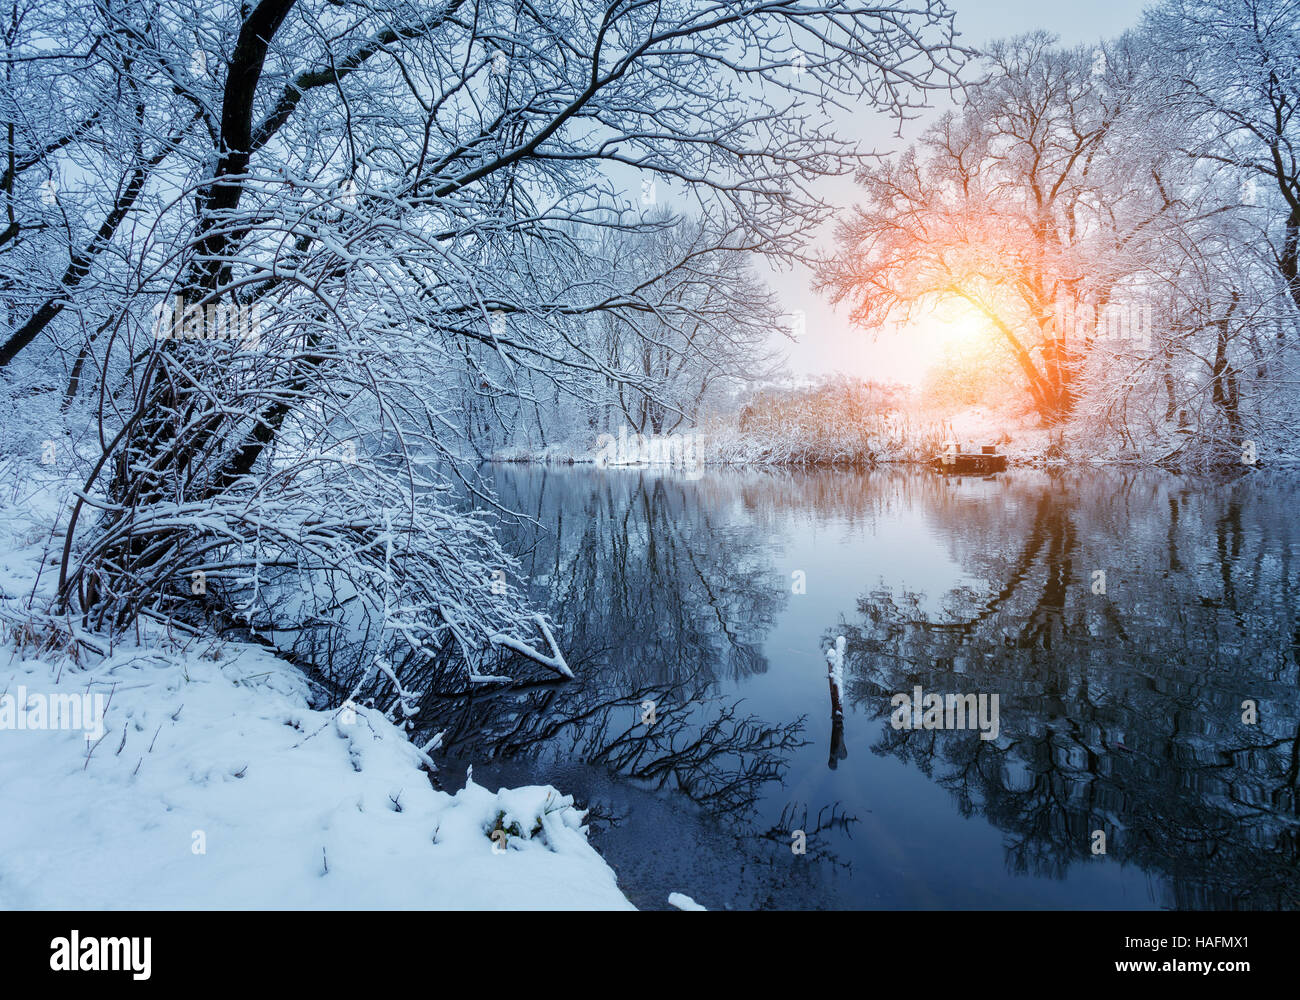 Bella inverno nella foresta sul fiume al tramonto. Paesaggio invernale. Snowy rami di alberi, splendido fiume con la riflessione in acqua, sole e blue s Foto Stock